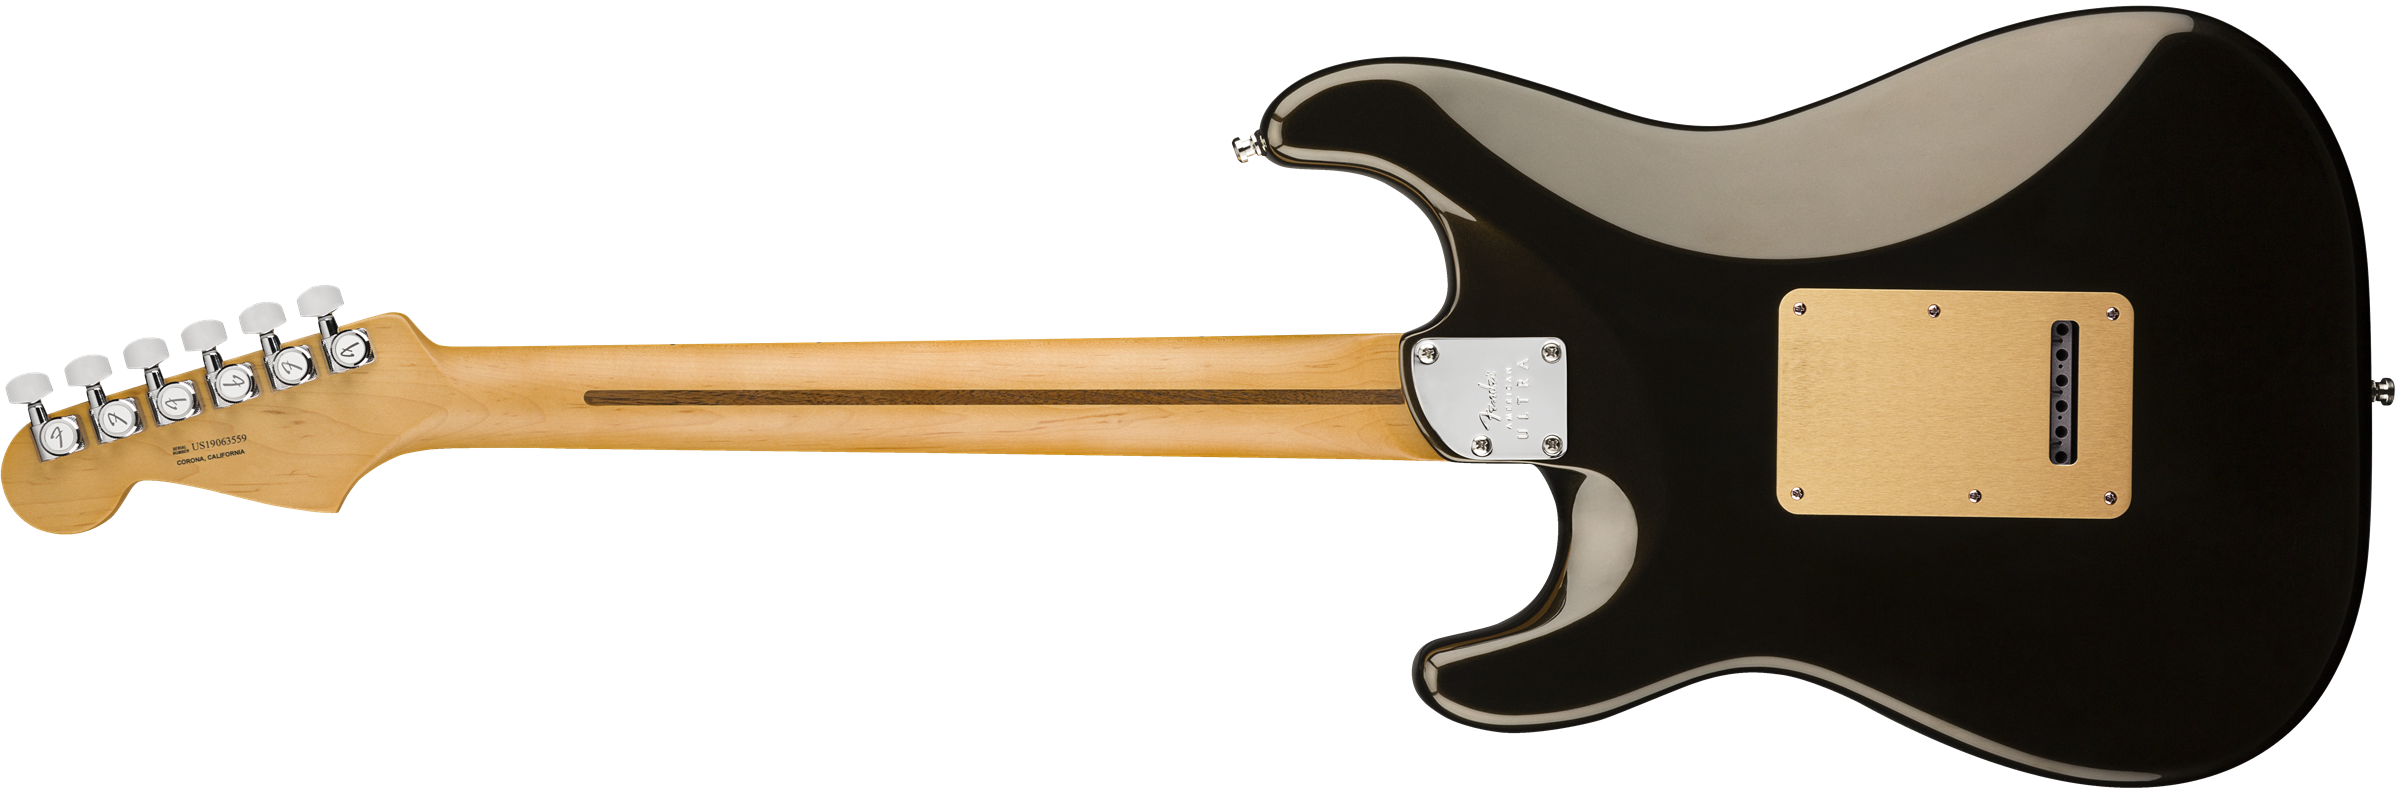 Fender Strat American Ultra Hss 2019 Usa Mn - Texas Tea - E-Gitarre in Str-Form - Variation 2